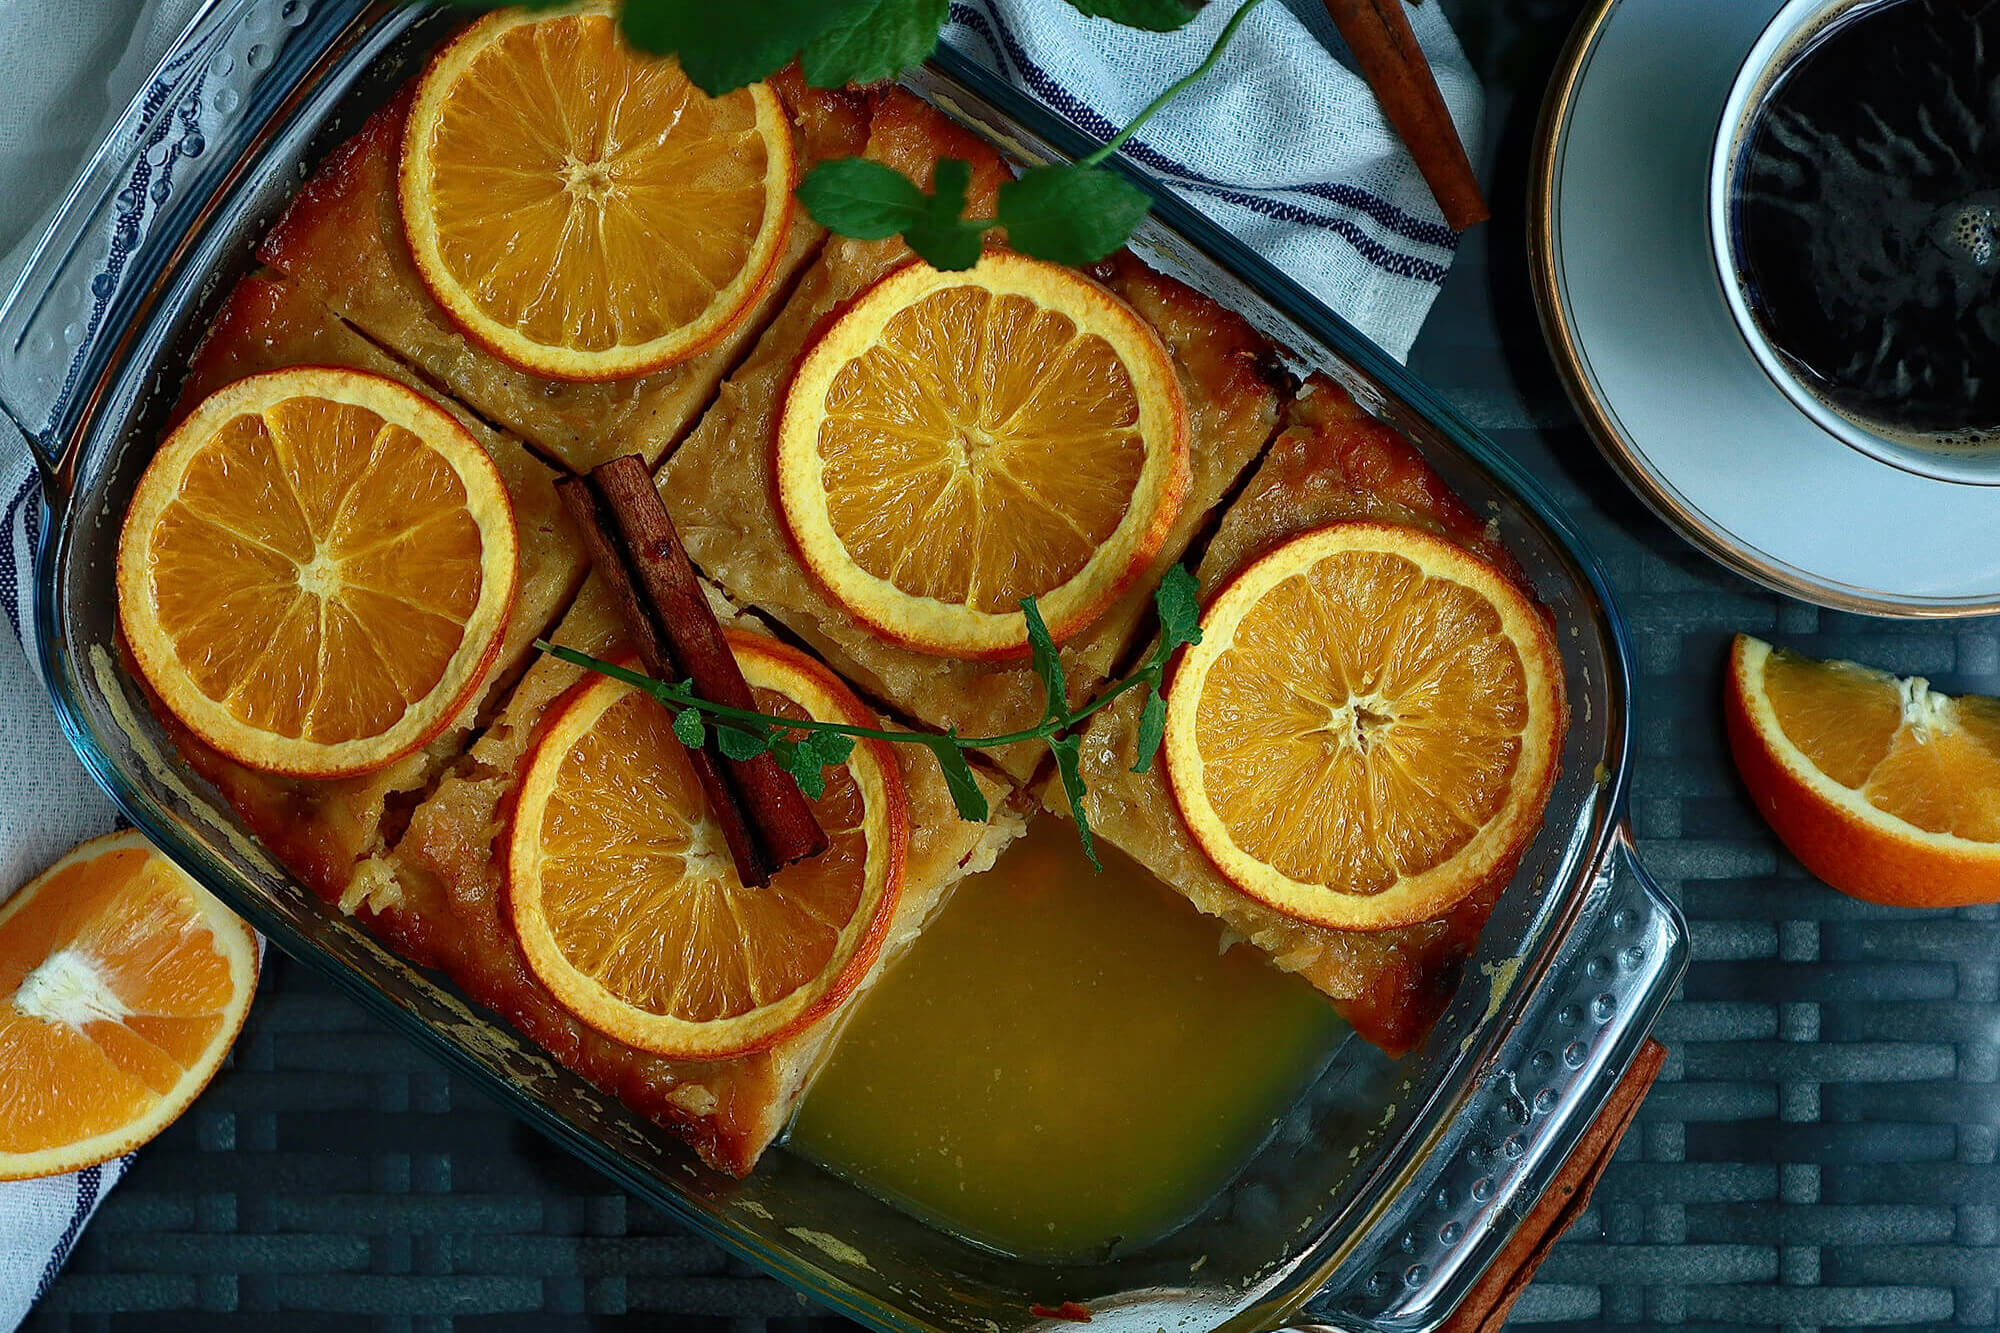 Prăjitură grecească cu portocale. Portokalopita: prăjitura deicioasă, insiropată pe care românii o adoră în vacanțe. Rețeta rapidă și ușoară